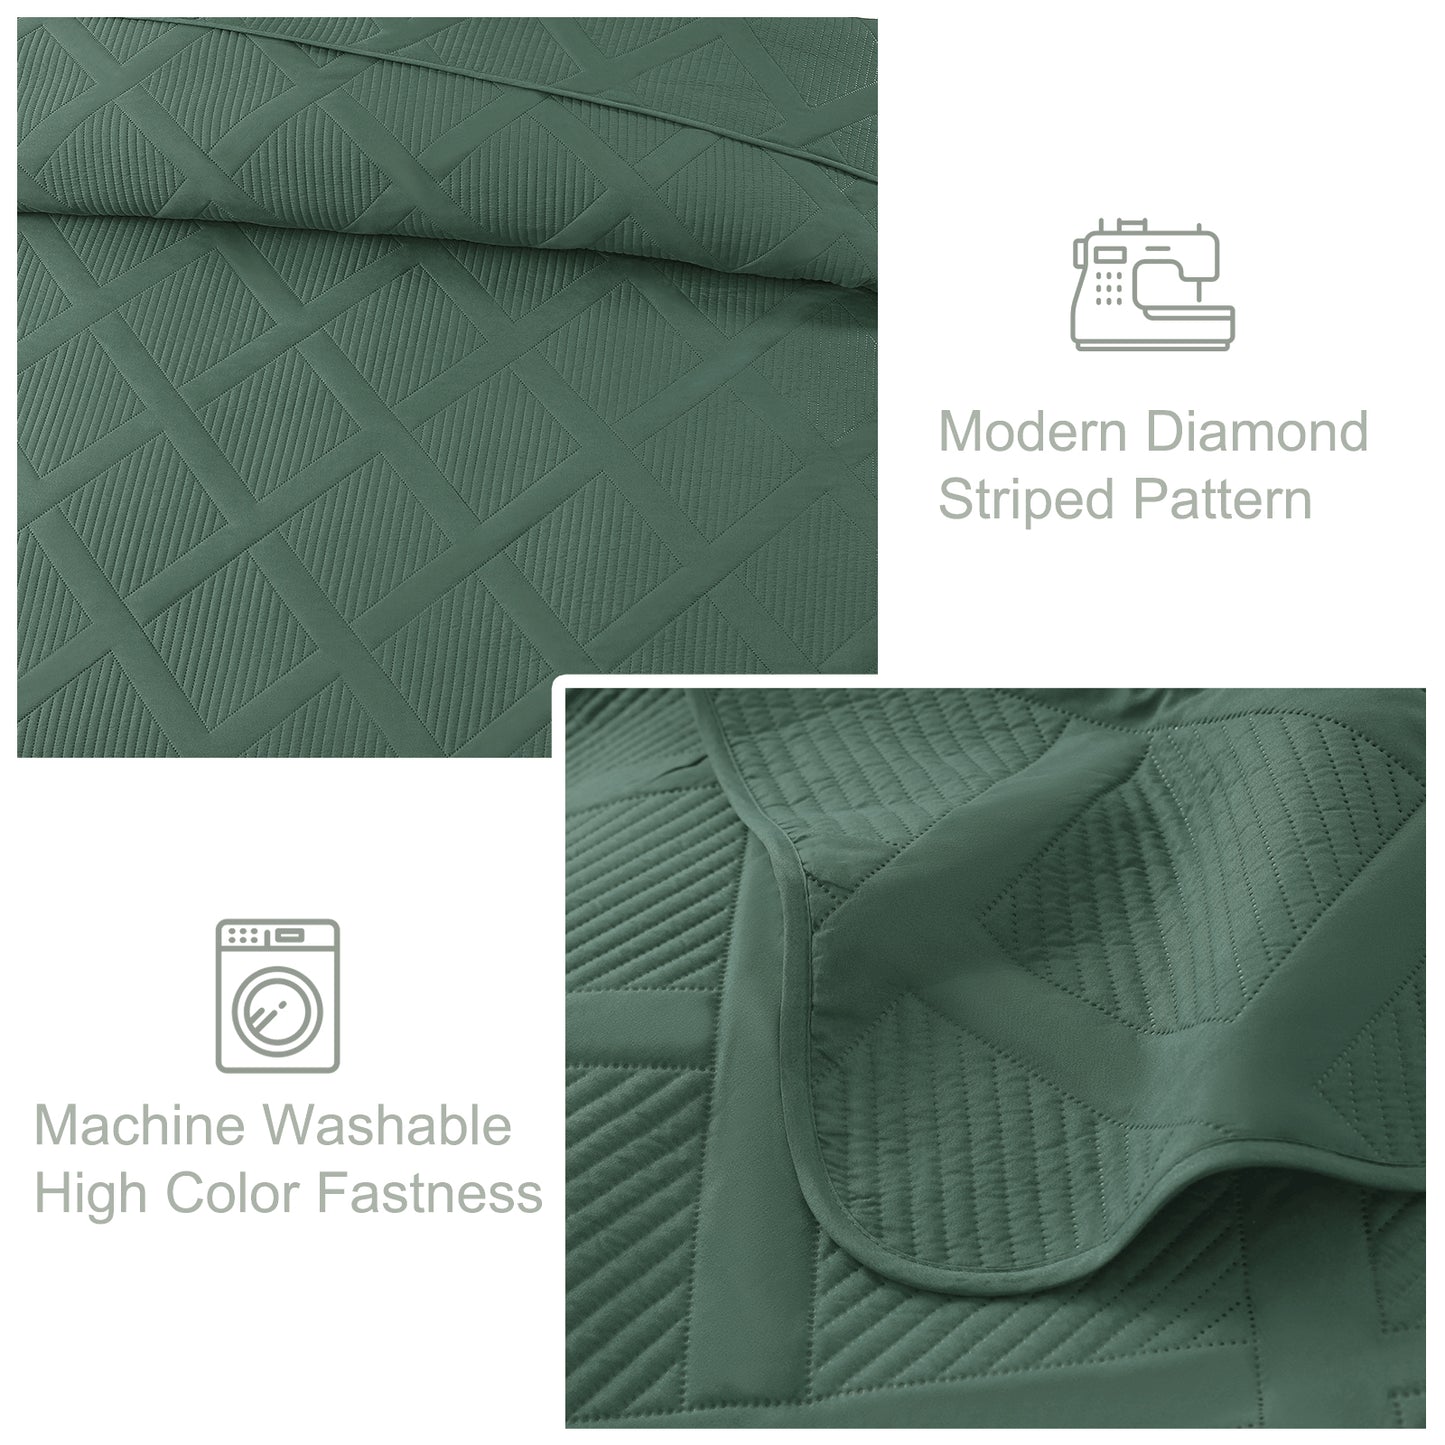 Exclusivo Mezcla Ultrasonic Full Queen Quilt Set, Lightweight Bedspreads Modern Striped Coverlet with 2 Pillow Shams, Green